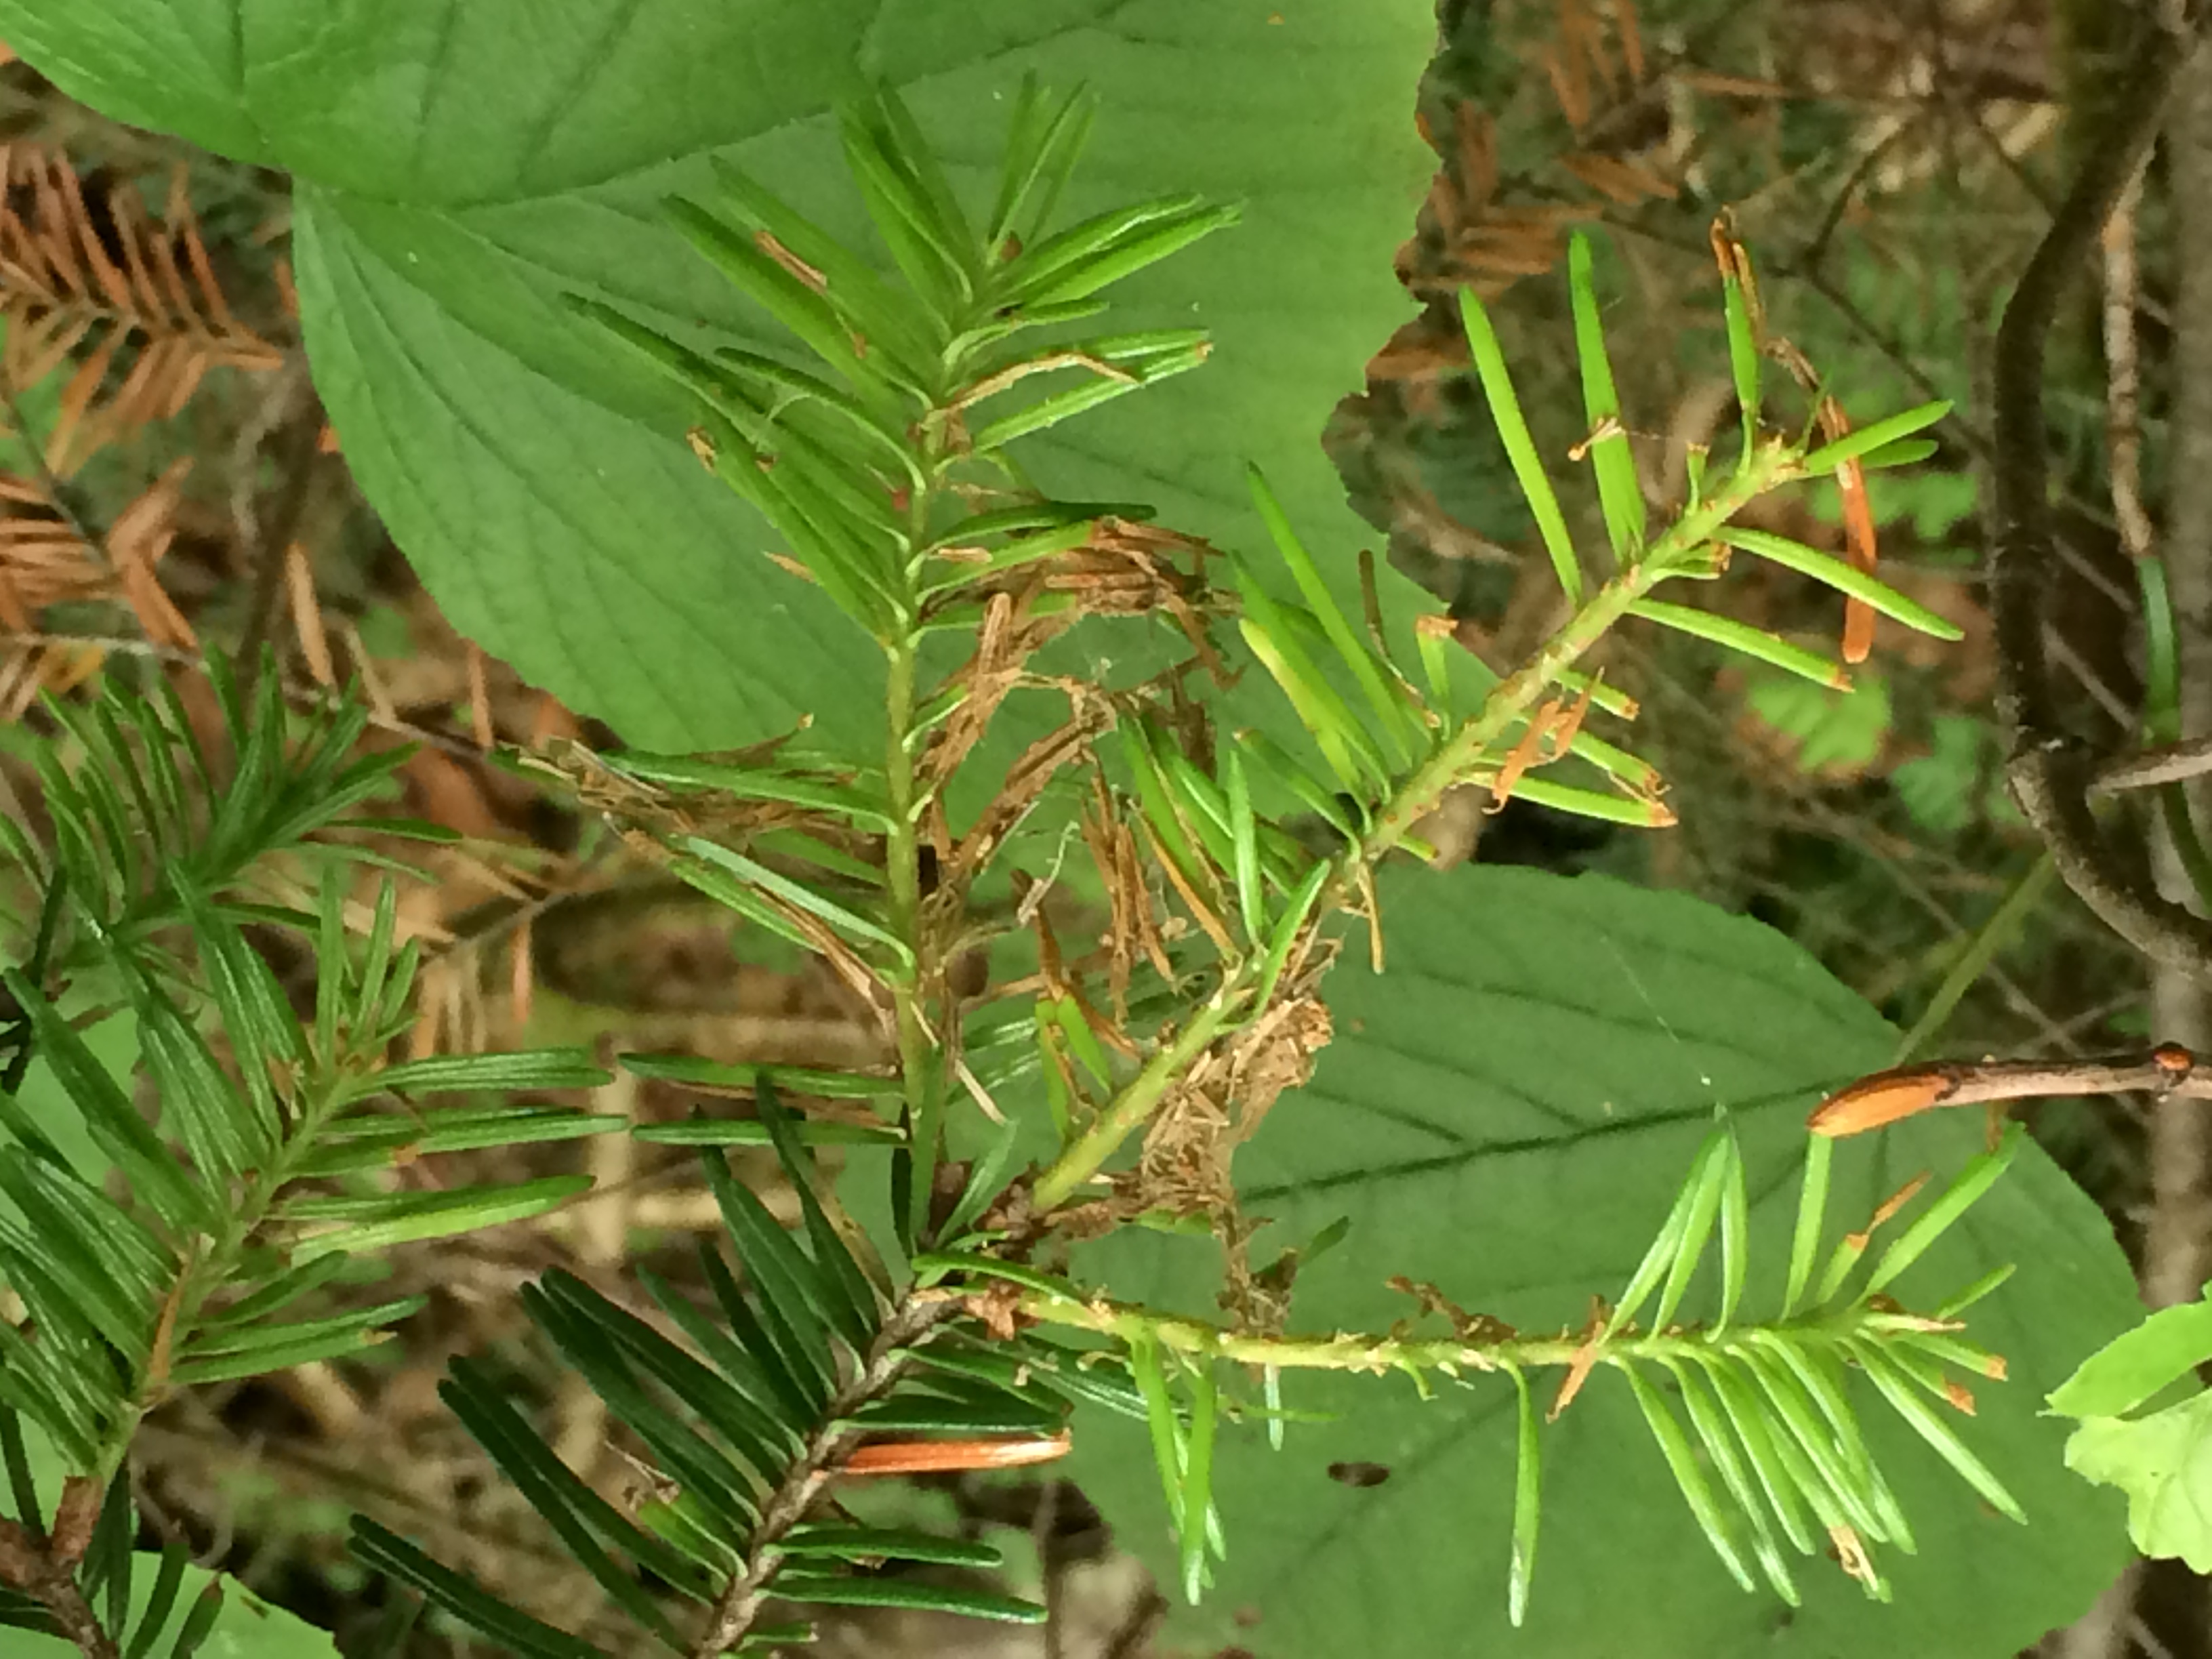 spruce budworm damage on needles